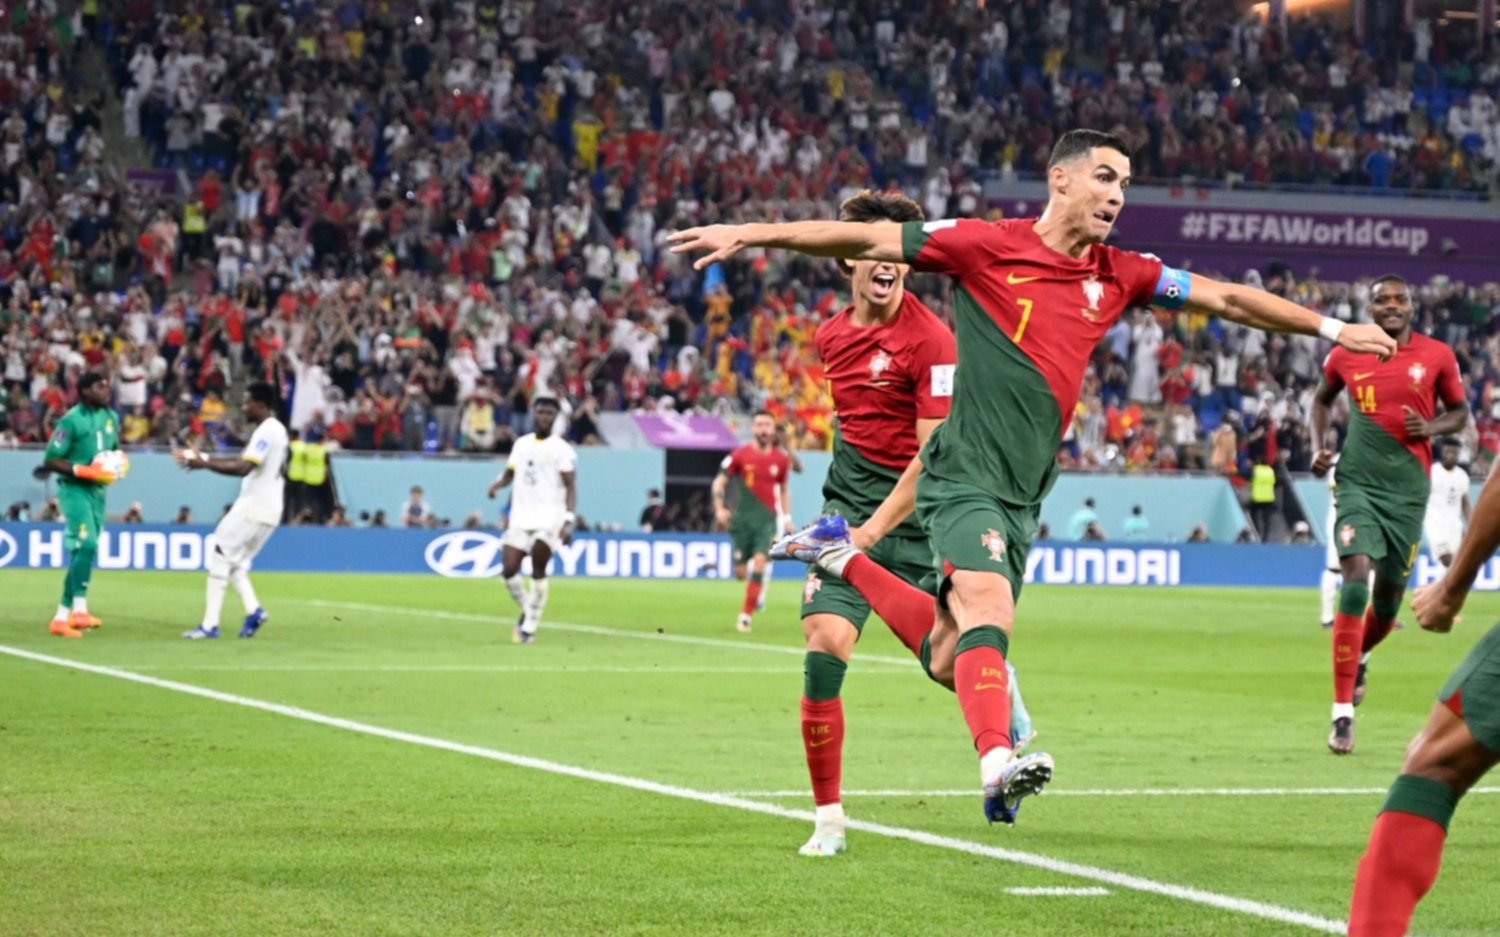 En un partidazo, Portugal venció 3 a 2 a Ghana en el grupo que comparte con Uruguay